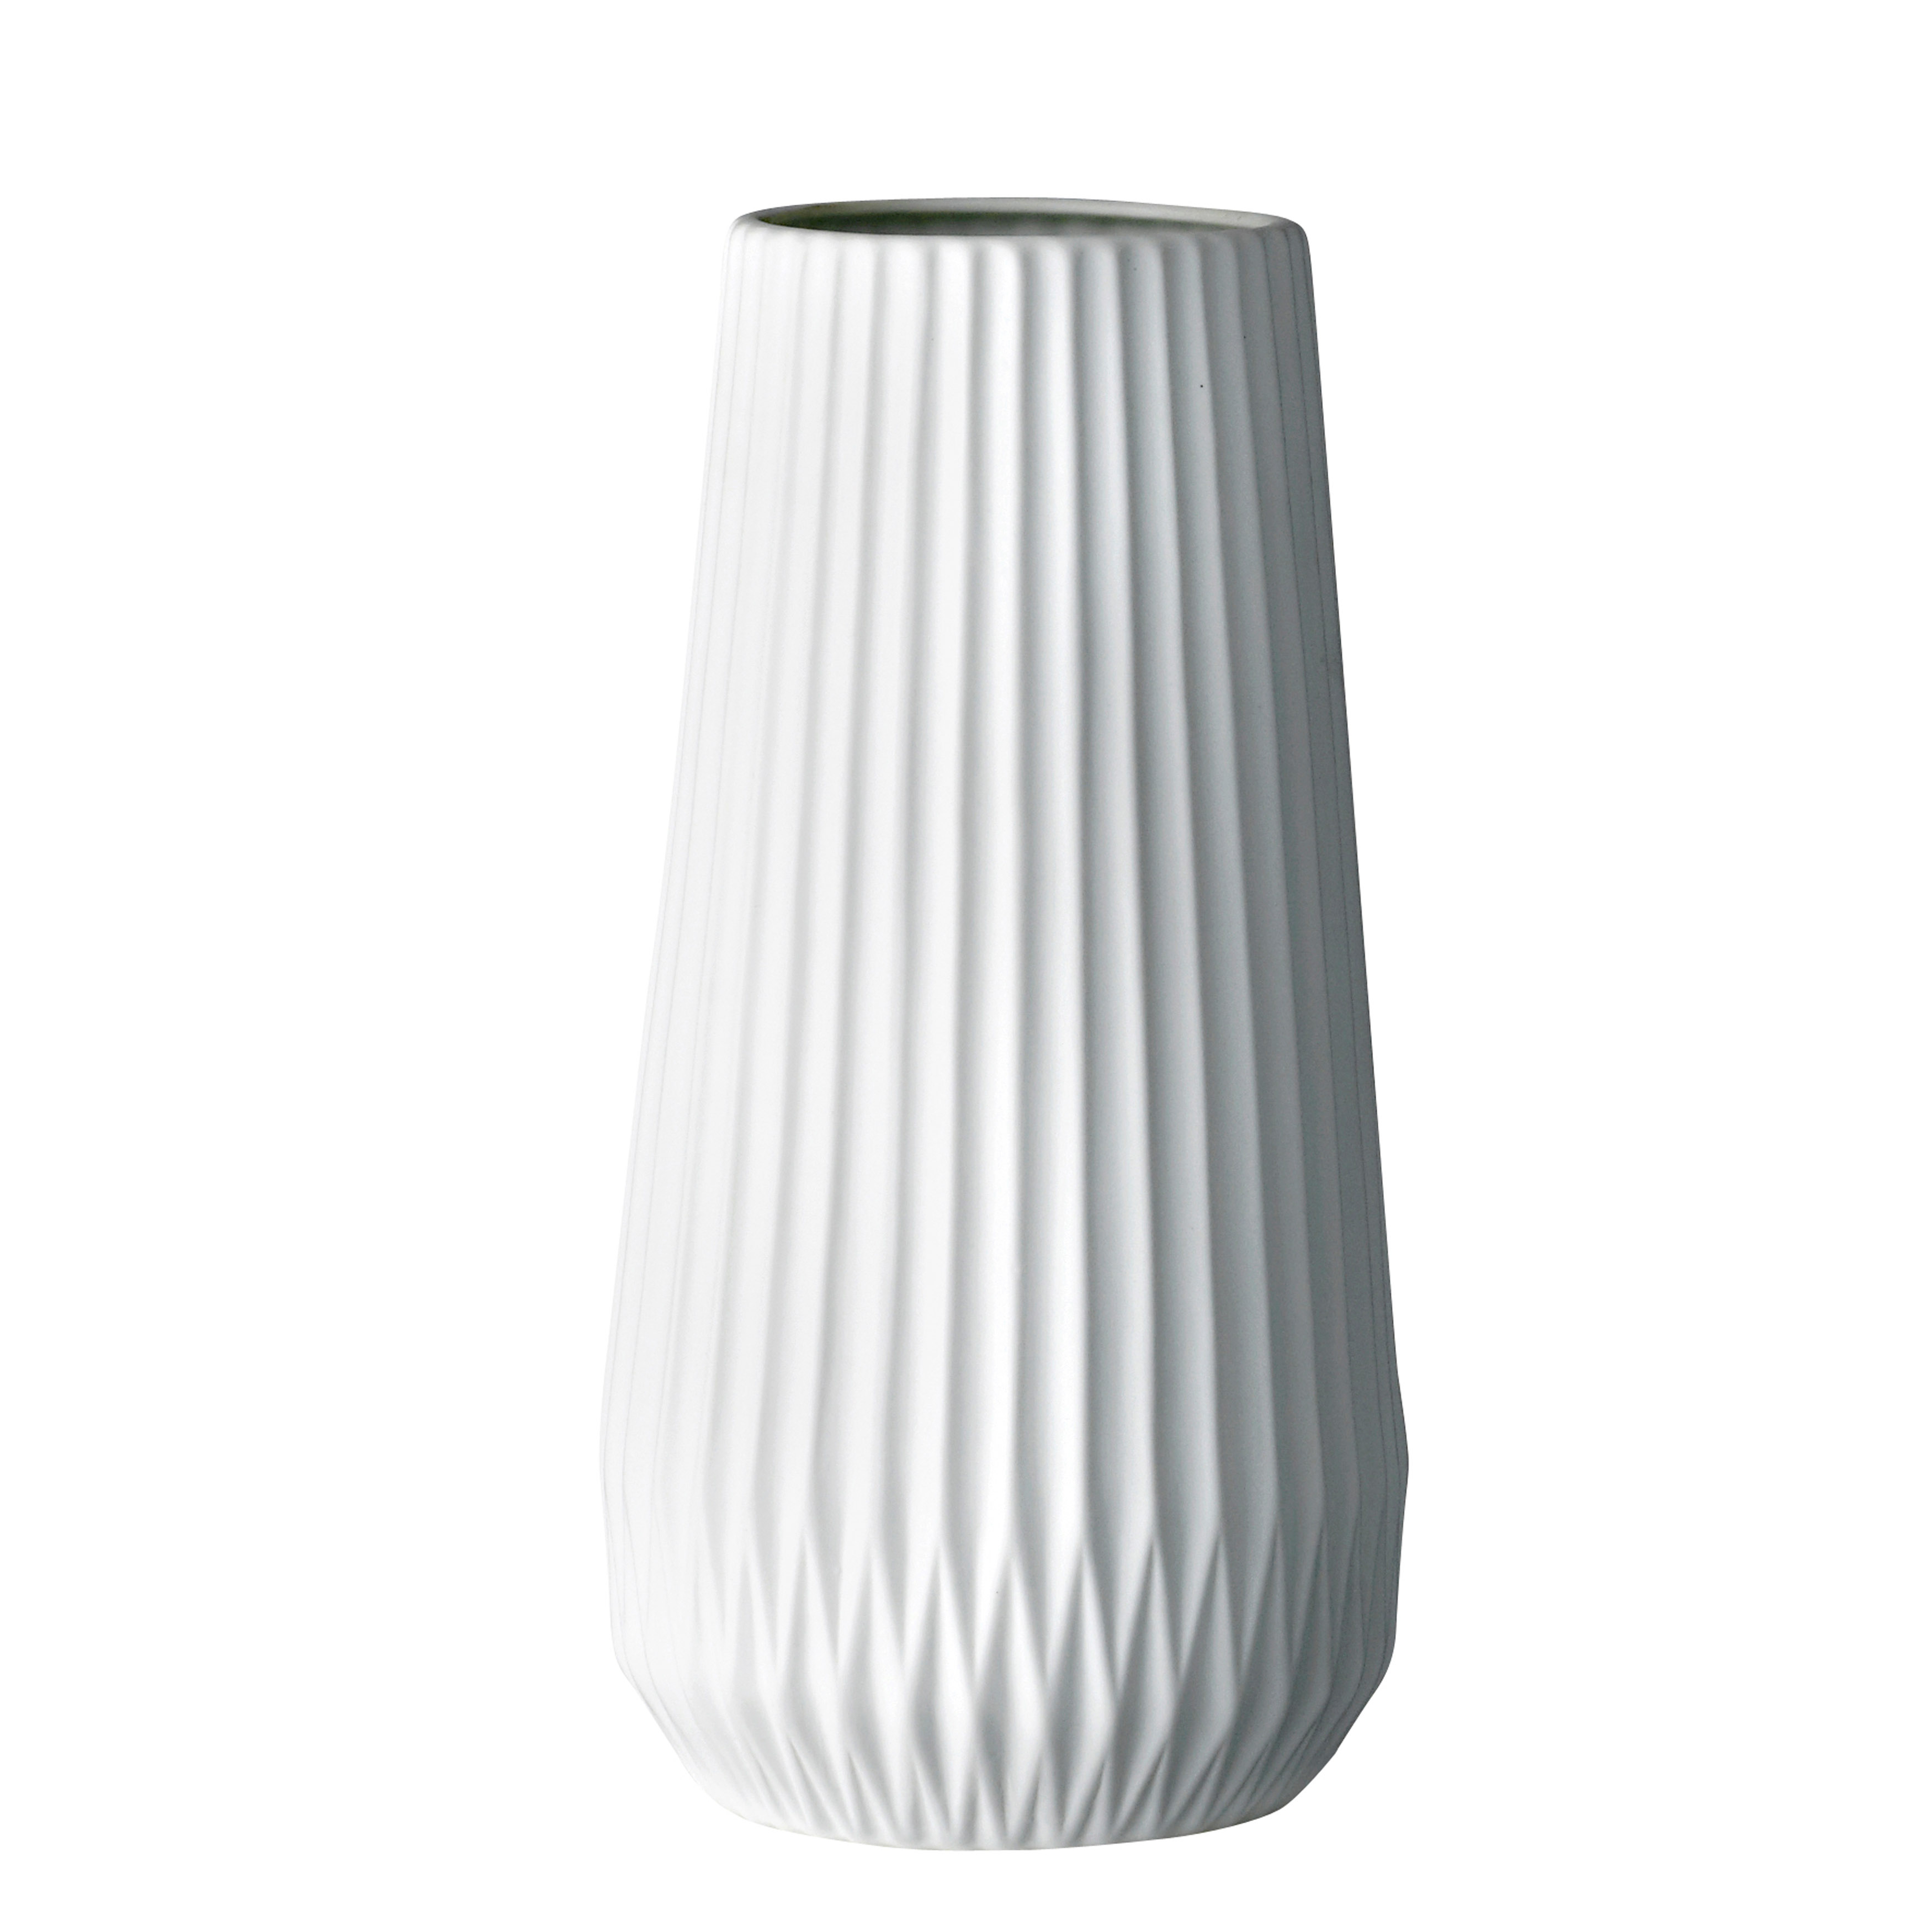 Tall White Ceramic Fluted Vase - Moss & Wilder